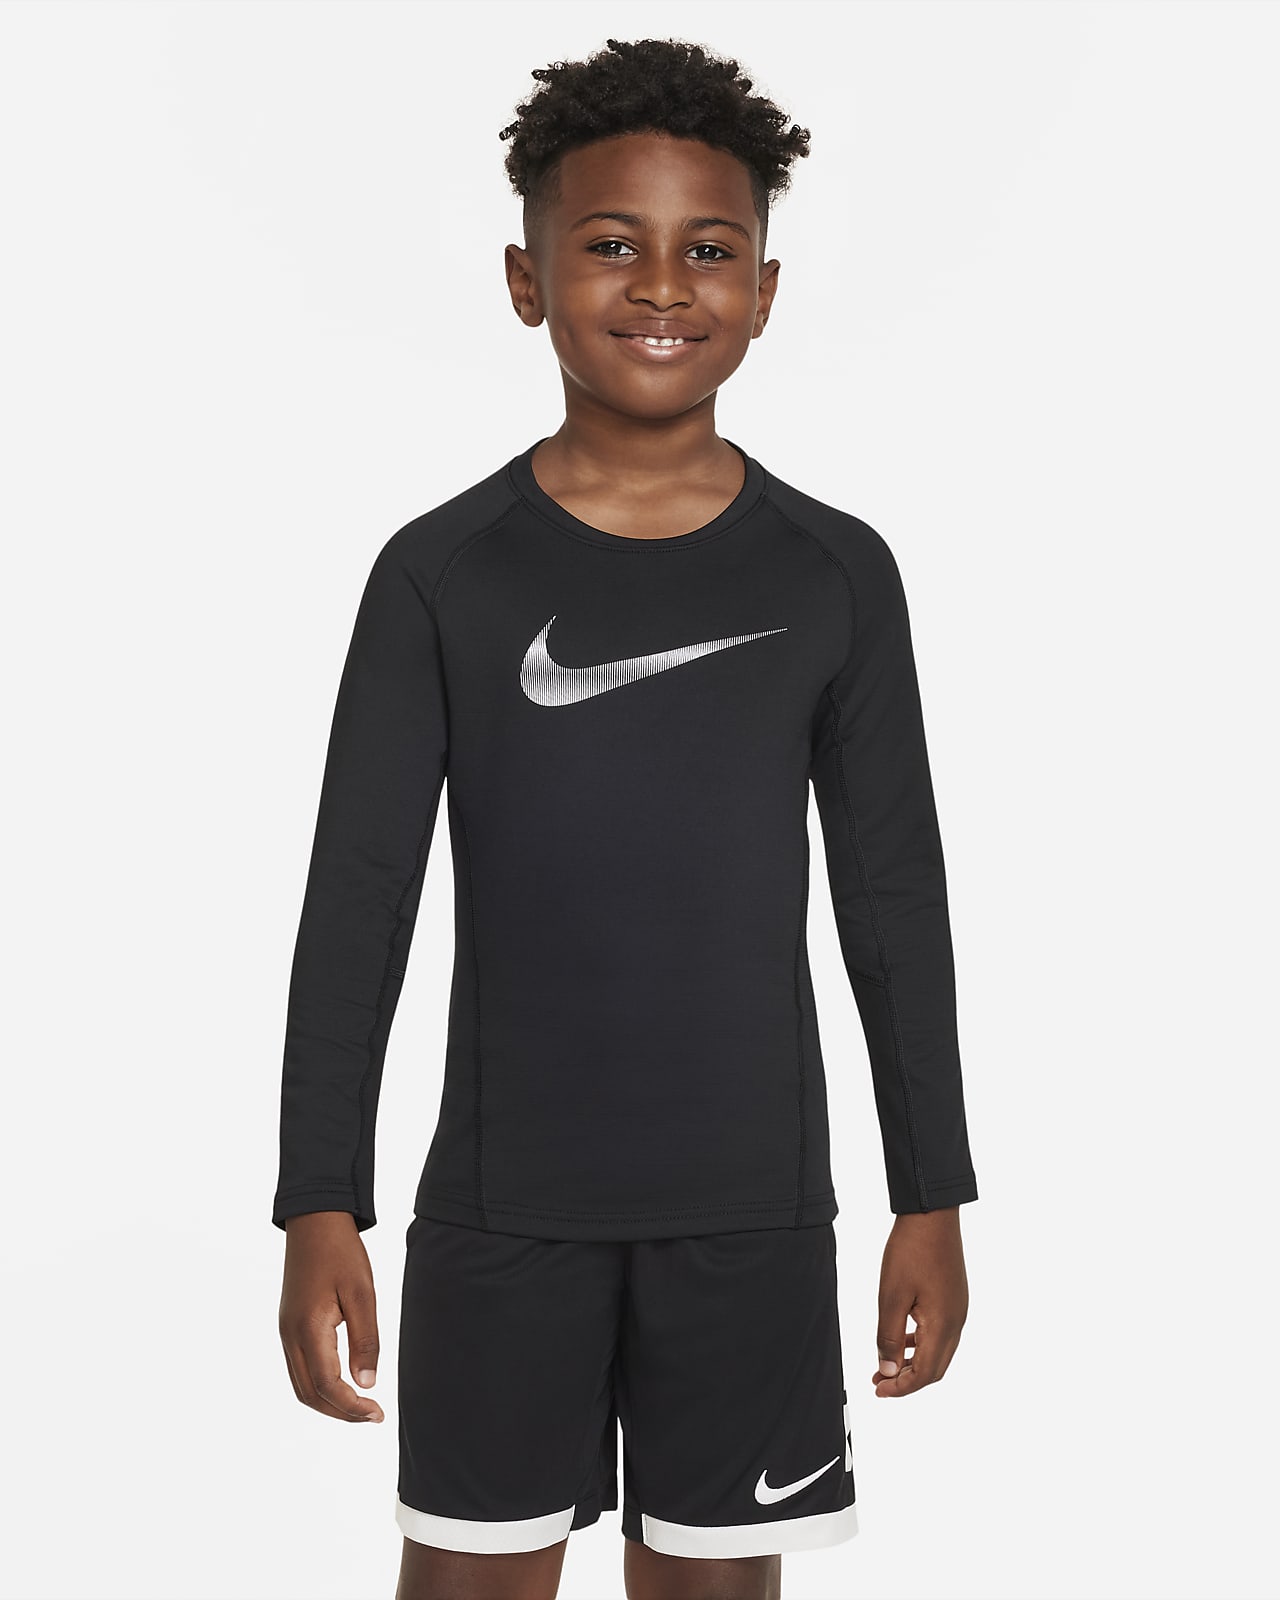 Tričko s dlouhým rukávem Nike Pro Warm pro větší děti (chlapce)